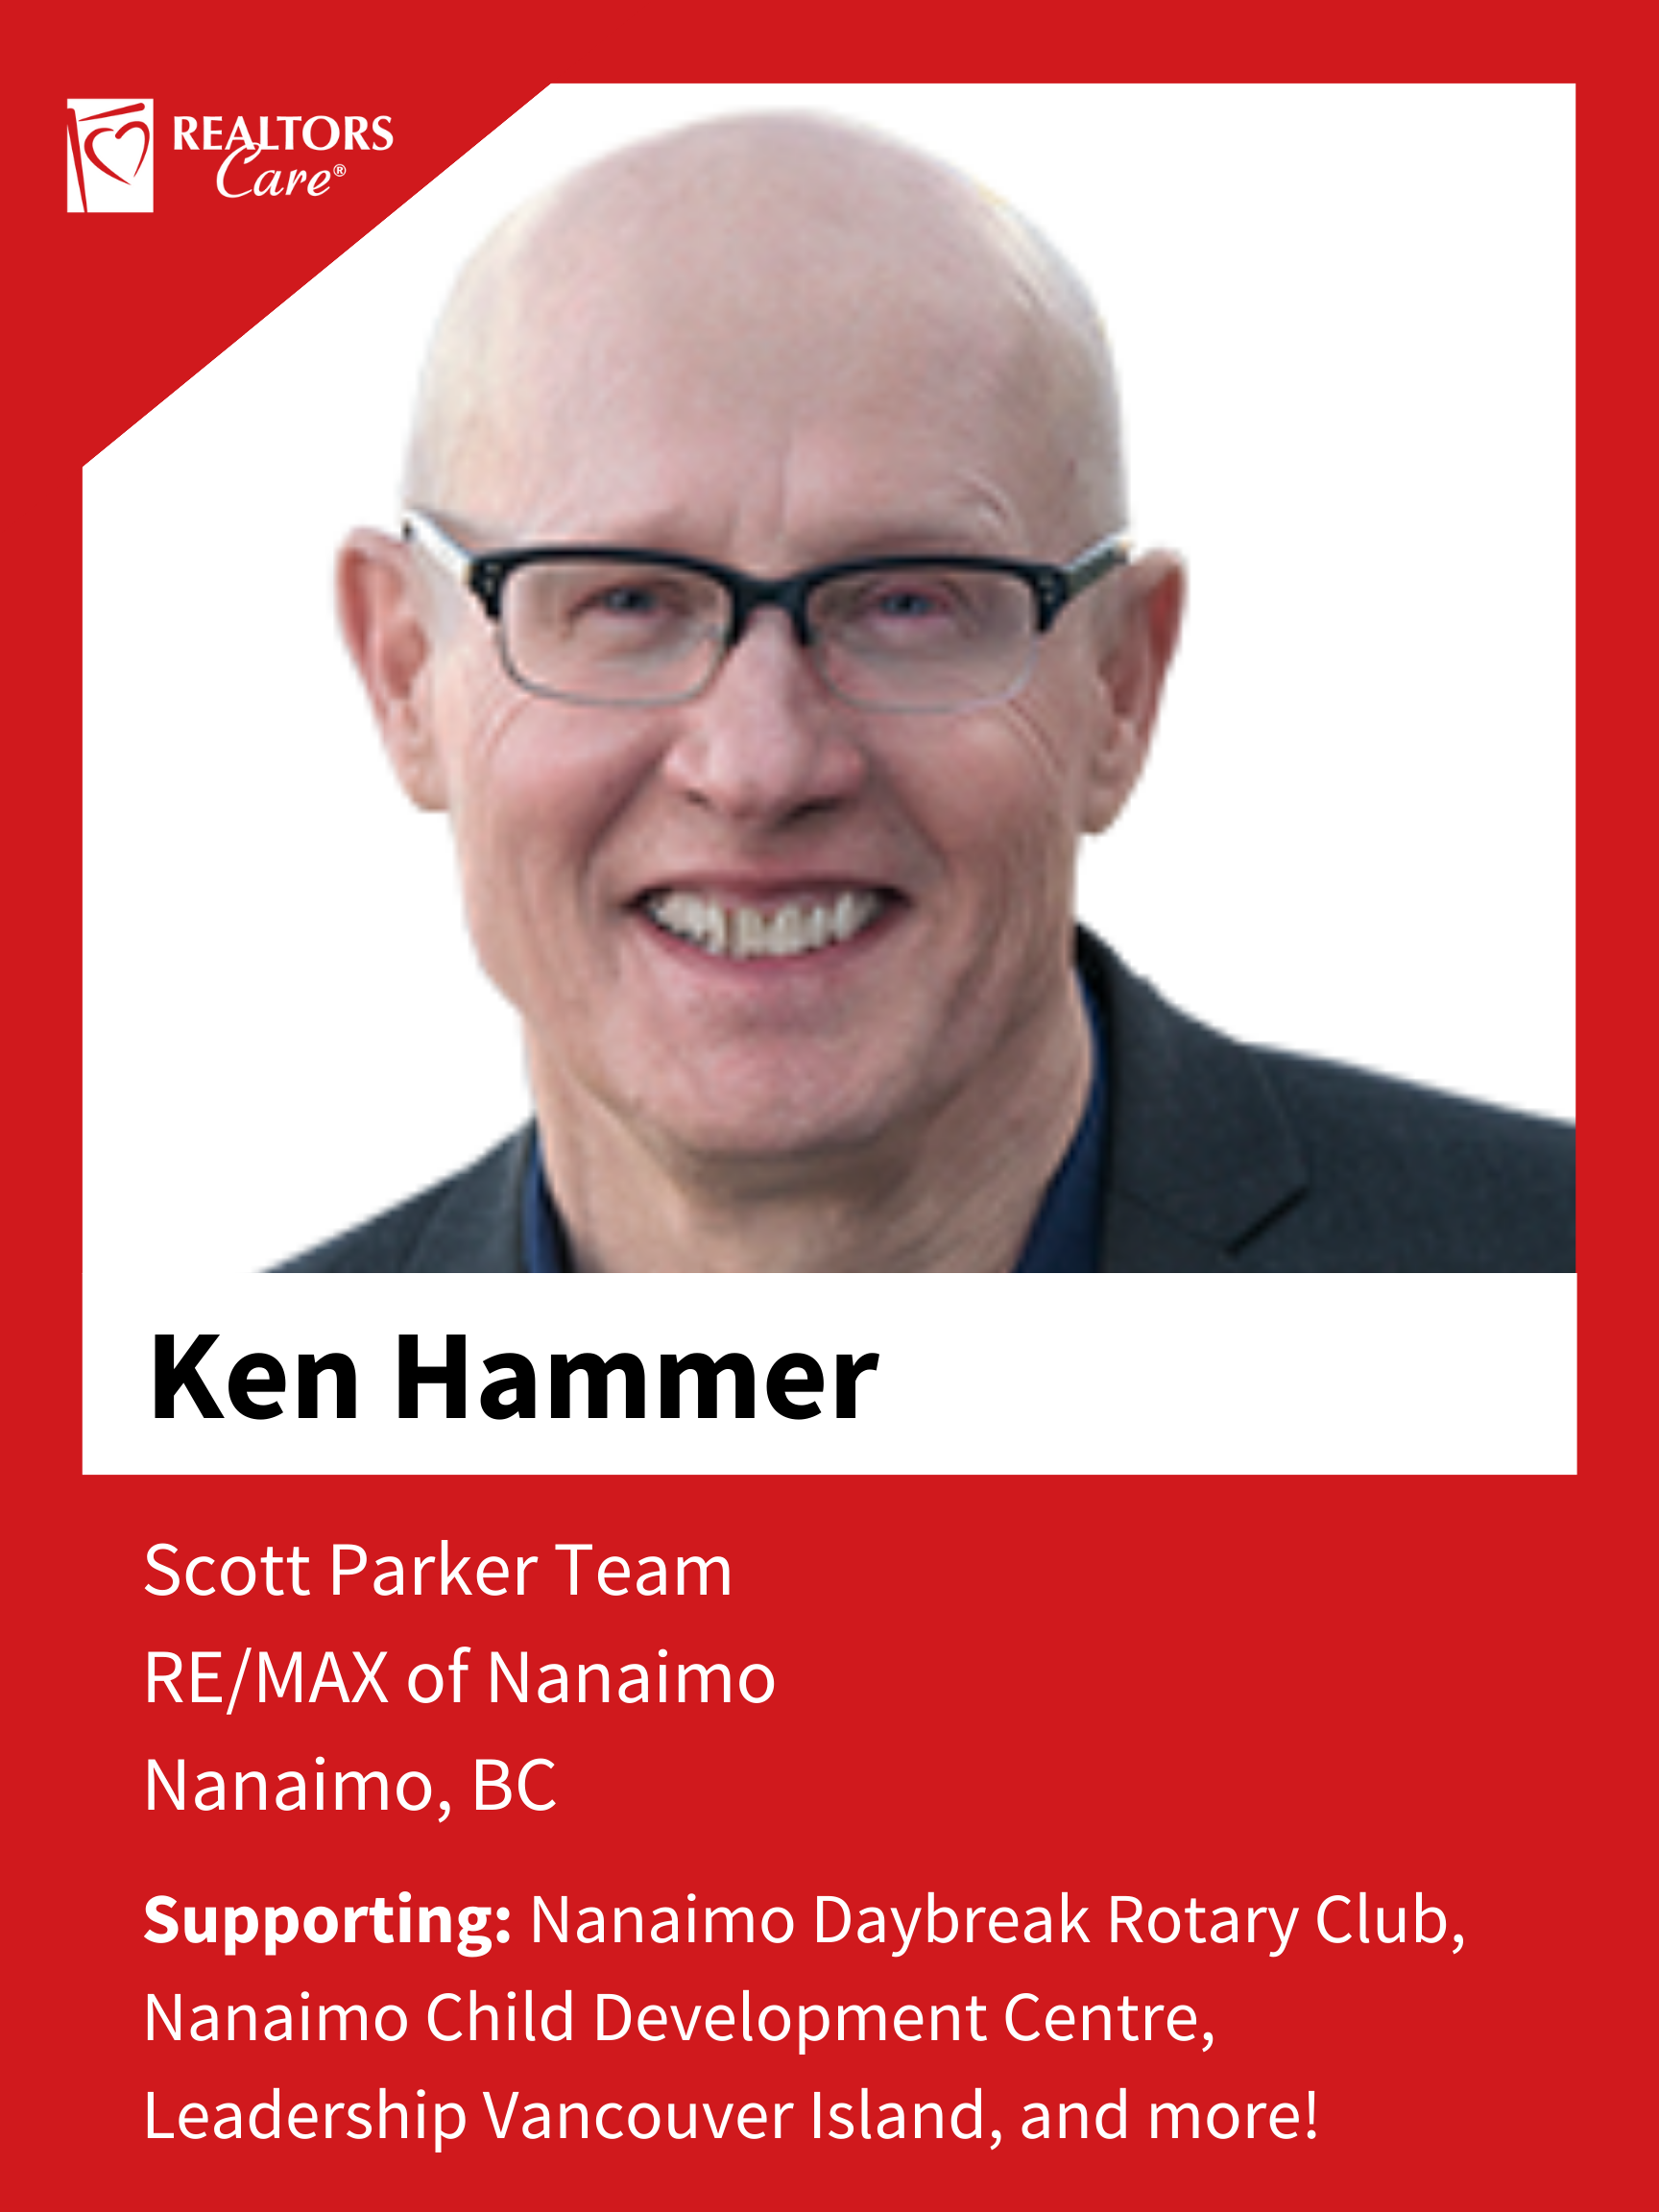 Ken Hammer
Nanaimo	BC
